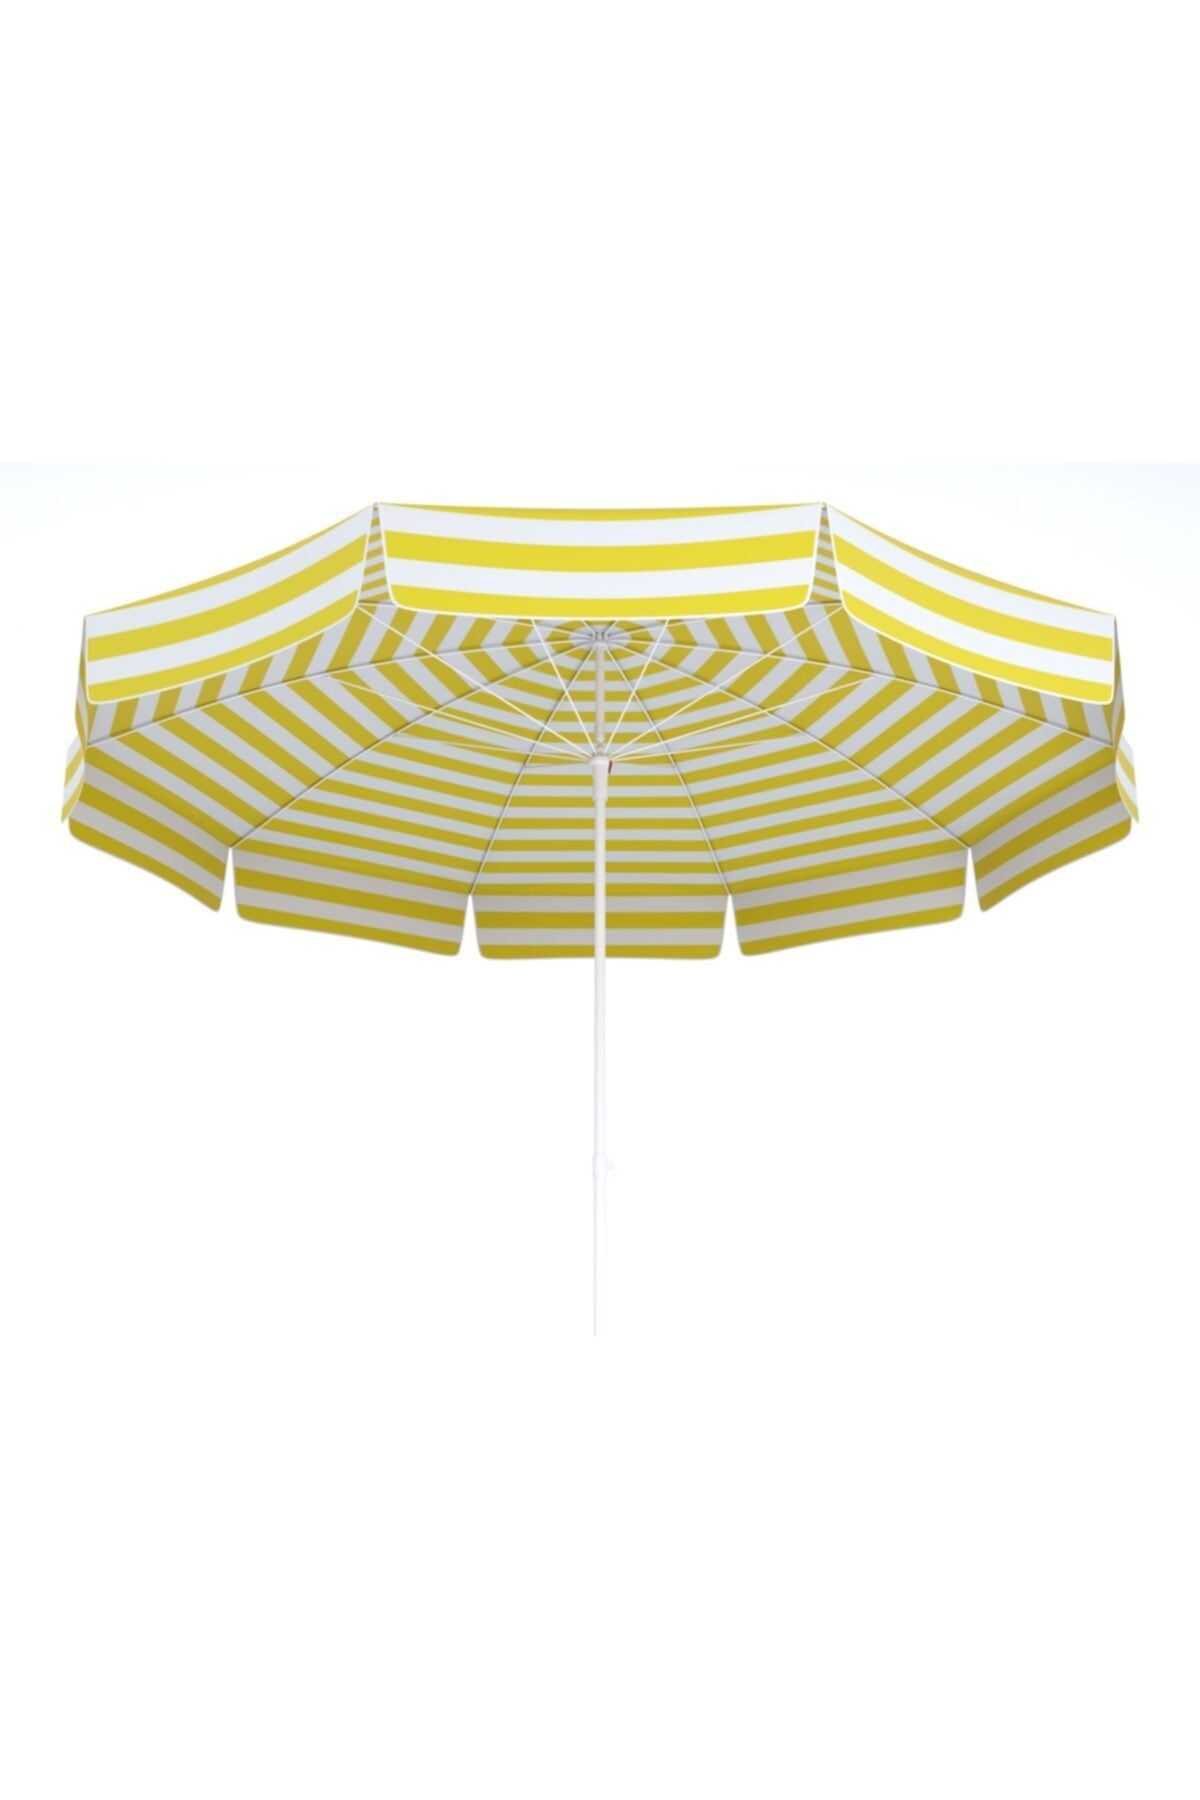 Tevalli Parasol's 100/10 Delüks Plaj Ve Bahçe Şemsiye - Sarı Beyaz Çizgi